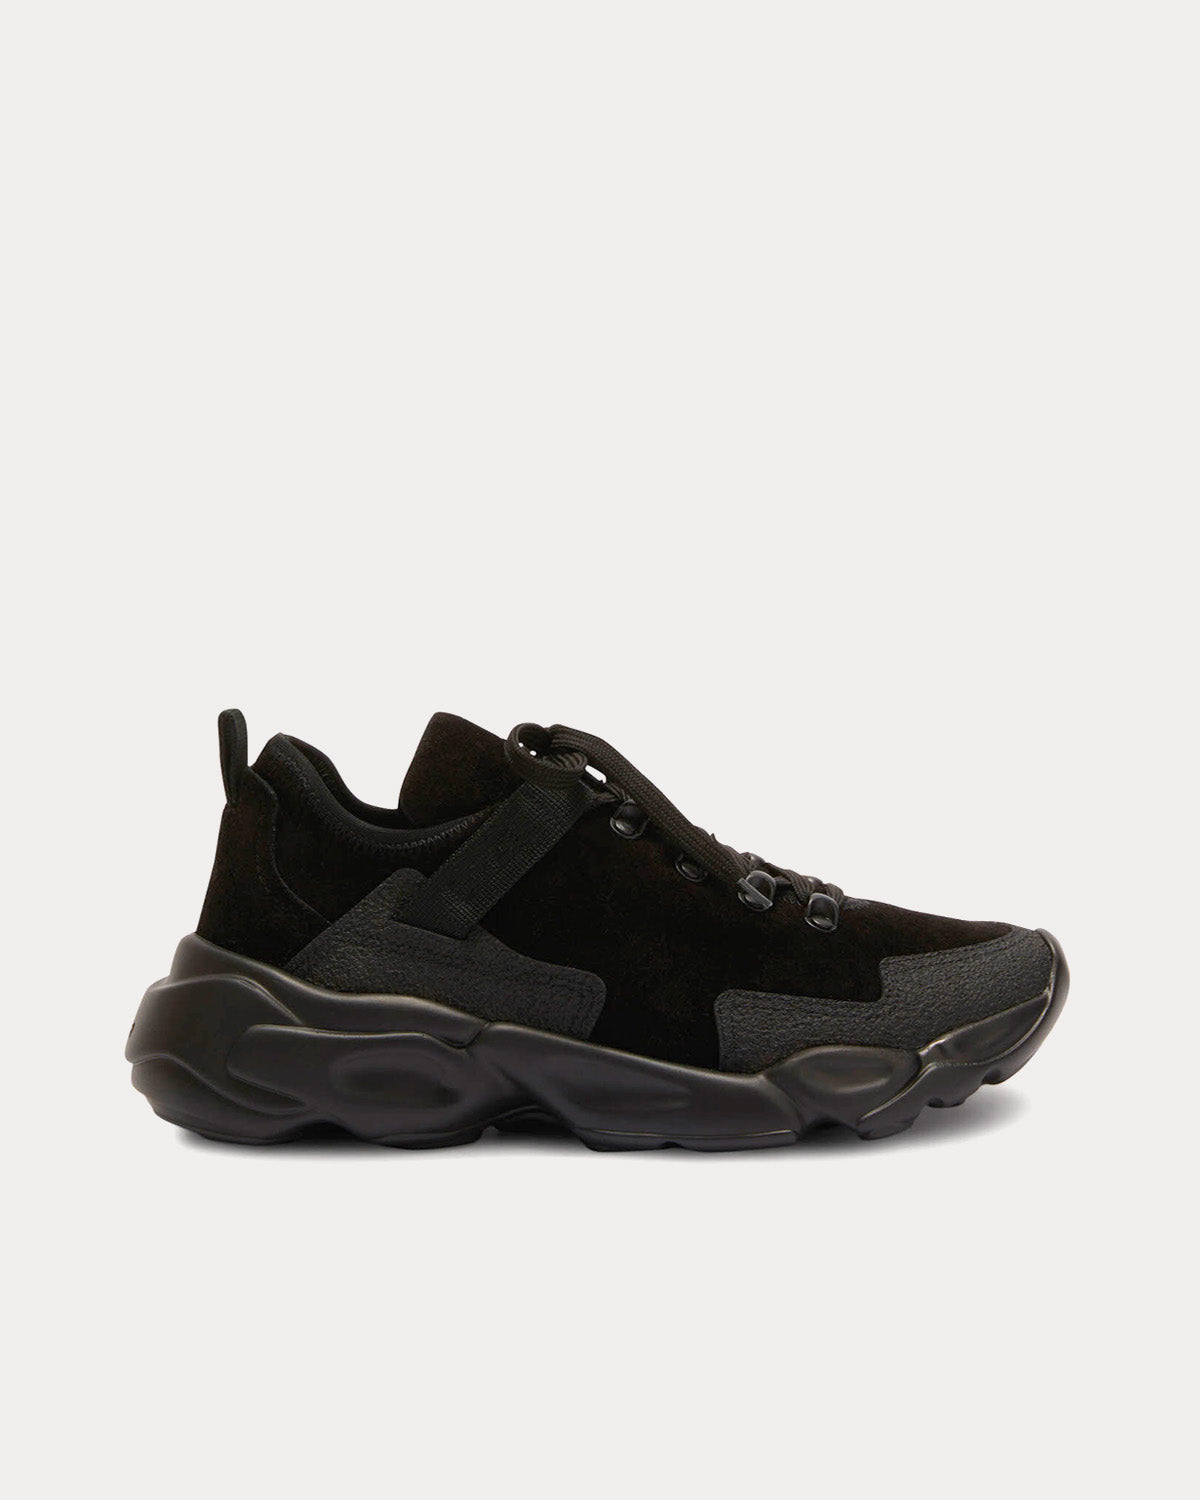 Jil Sander - Suede Leather Black Low Top Sneakers